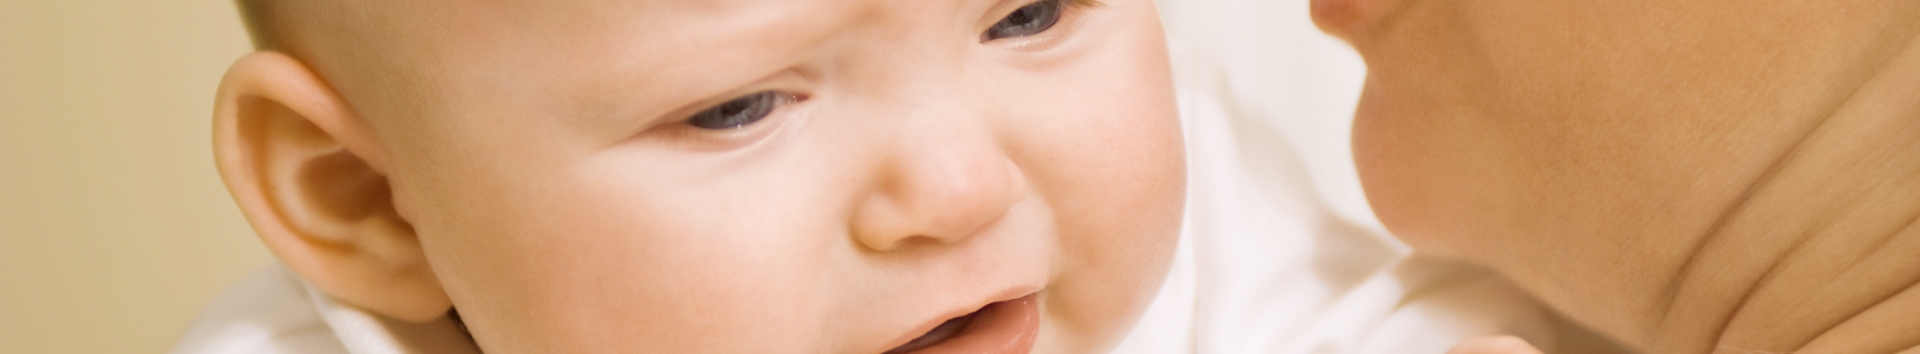 Tosse e resfriado em bebê: Dicas para aliviar e evitar agonia